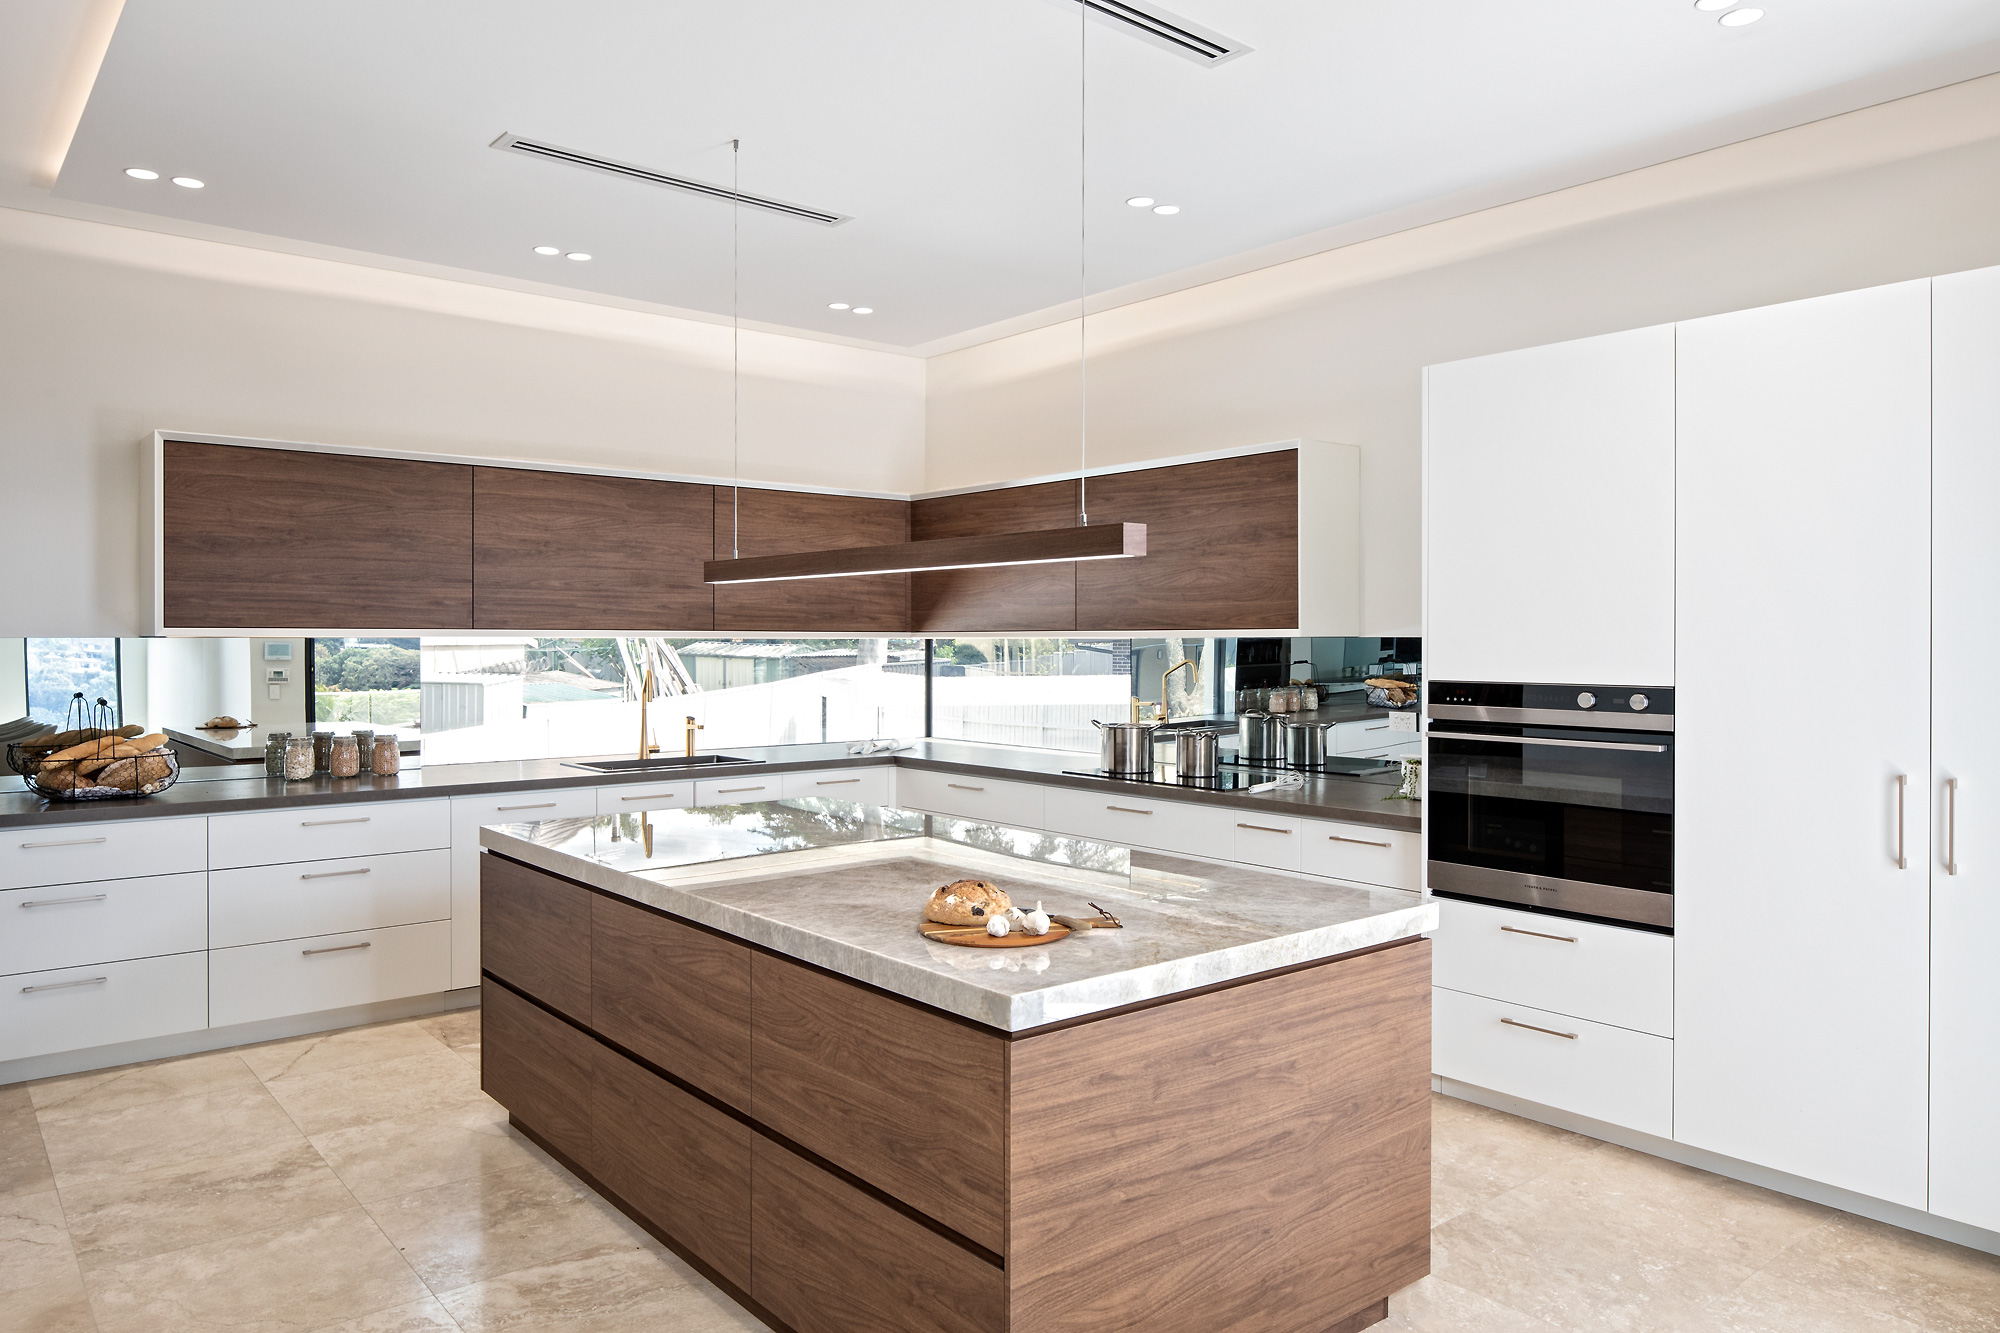 Best Modern Kitchen Designs Luxury Kitchen Renovations Cabinetry Huge Kitchen Showroom Kitchen Designers Indoor And Outdoor Alfresco Kitchens 30 Mins From Sydney Cbd